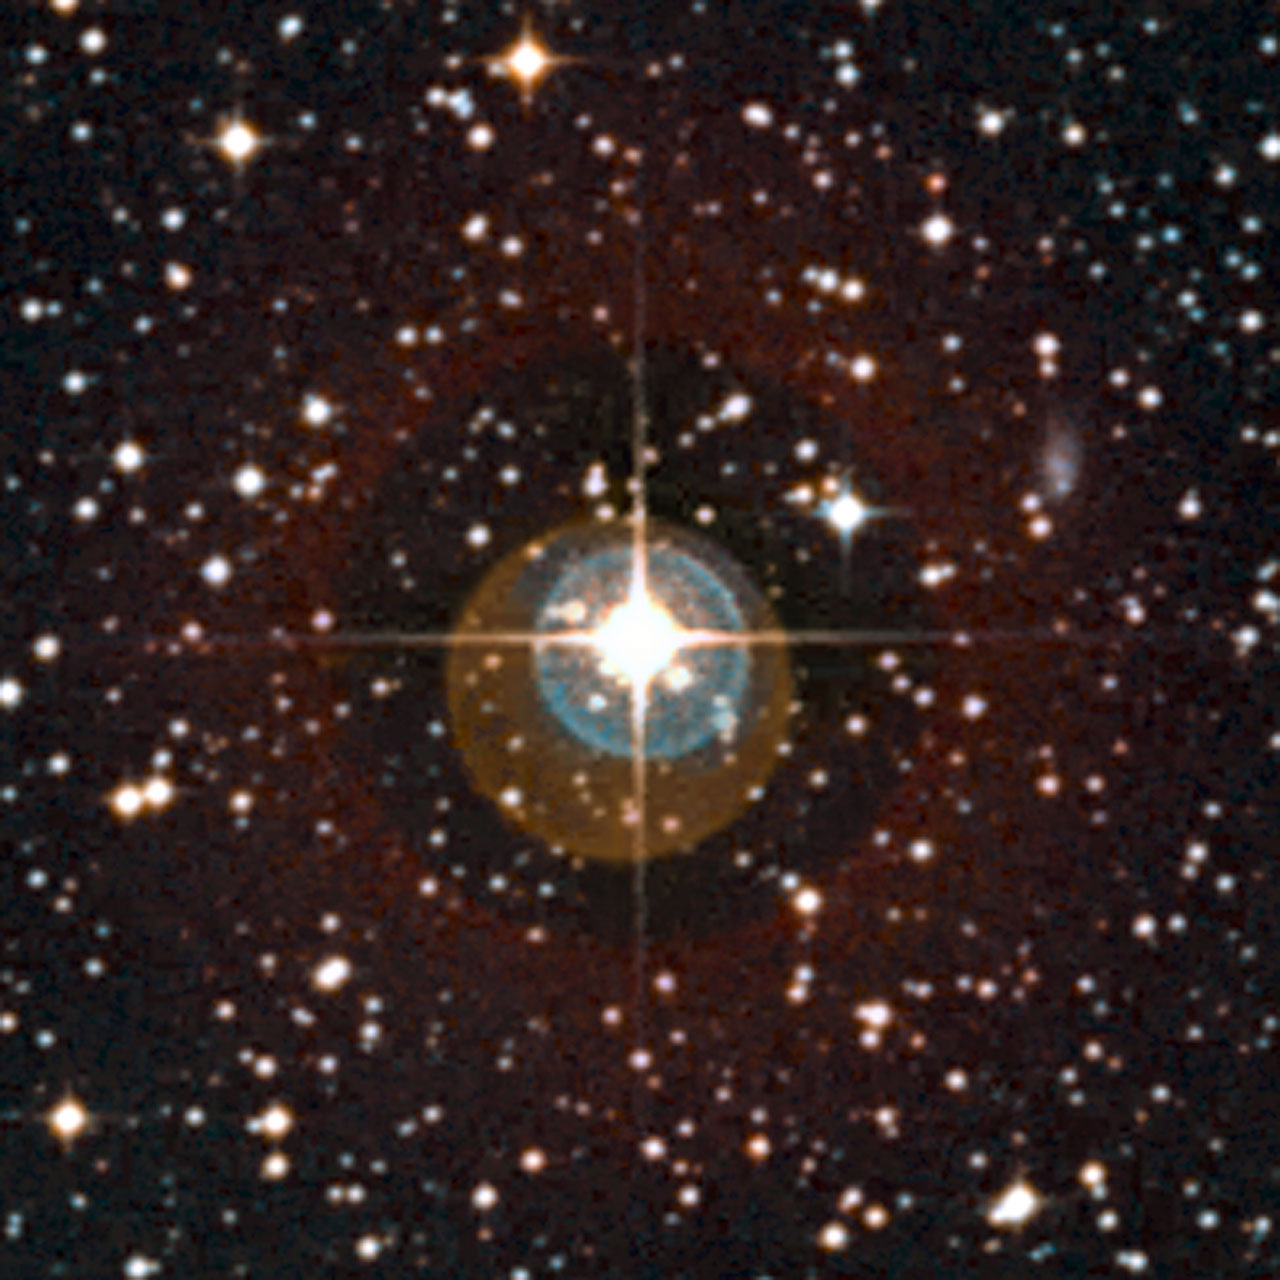 HD 85512 (ESO Digitized Survey 2)